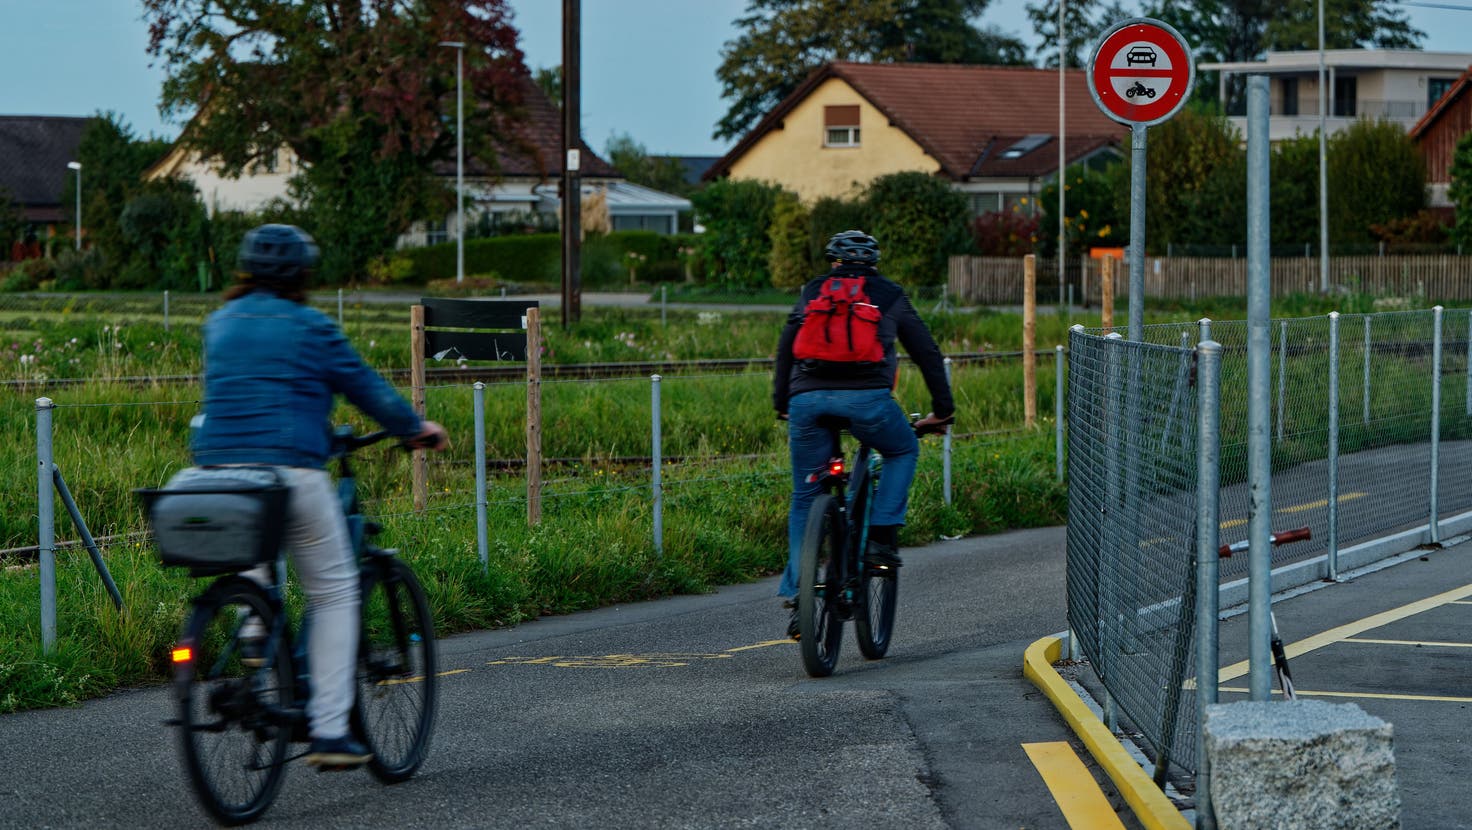 Ausgangs Egnach in Richtung Arbon ist neu das Schild 2.13 angebracht, das lediglich Autos und Motorrädern die Durchfahrt verbietet, nicht aber Töffli und schnellen Elektrovelos. (Bild: Manuel Nagel)